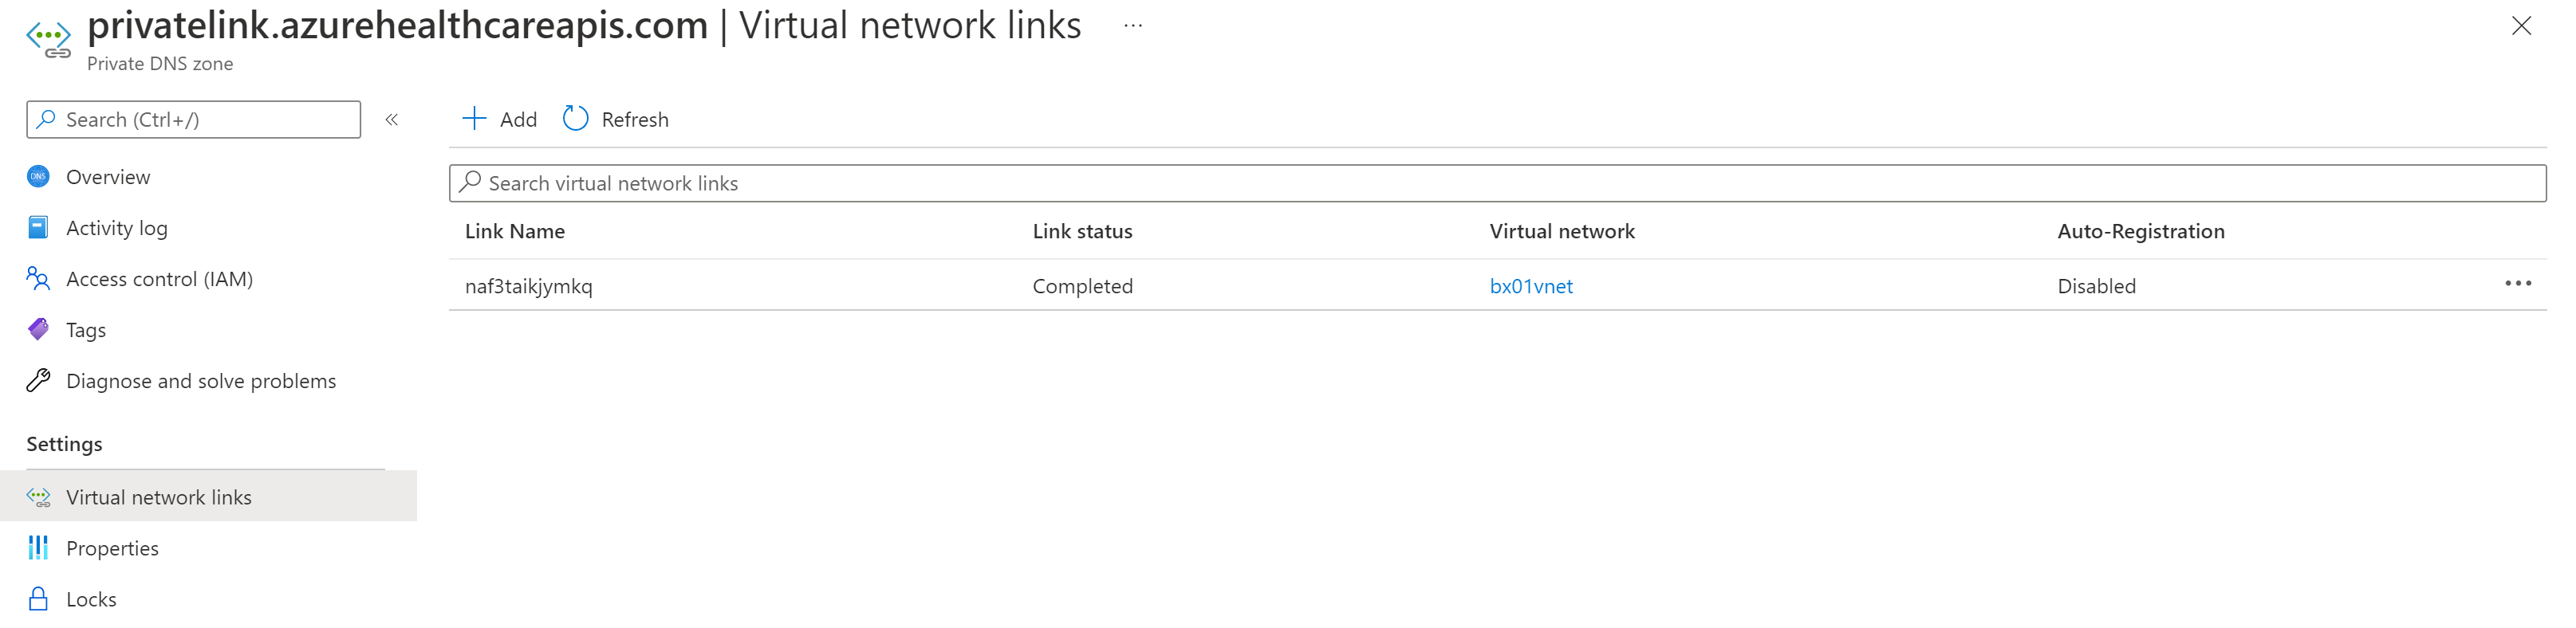 Capture d’écran montrant l’image de Private Link Virtual Network Link FHIR.